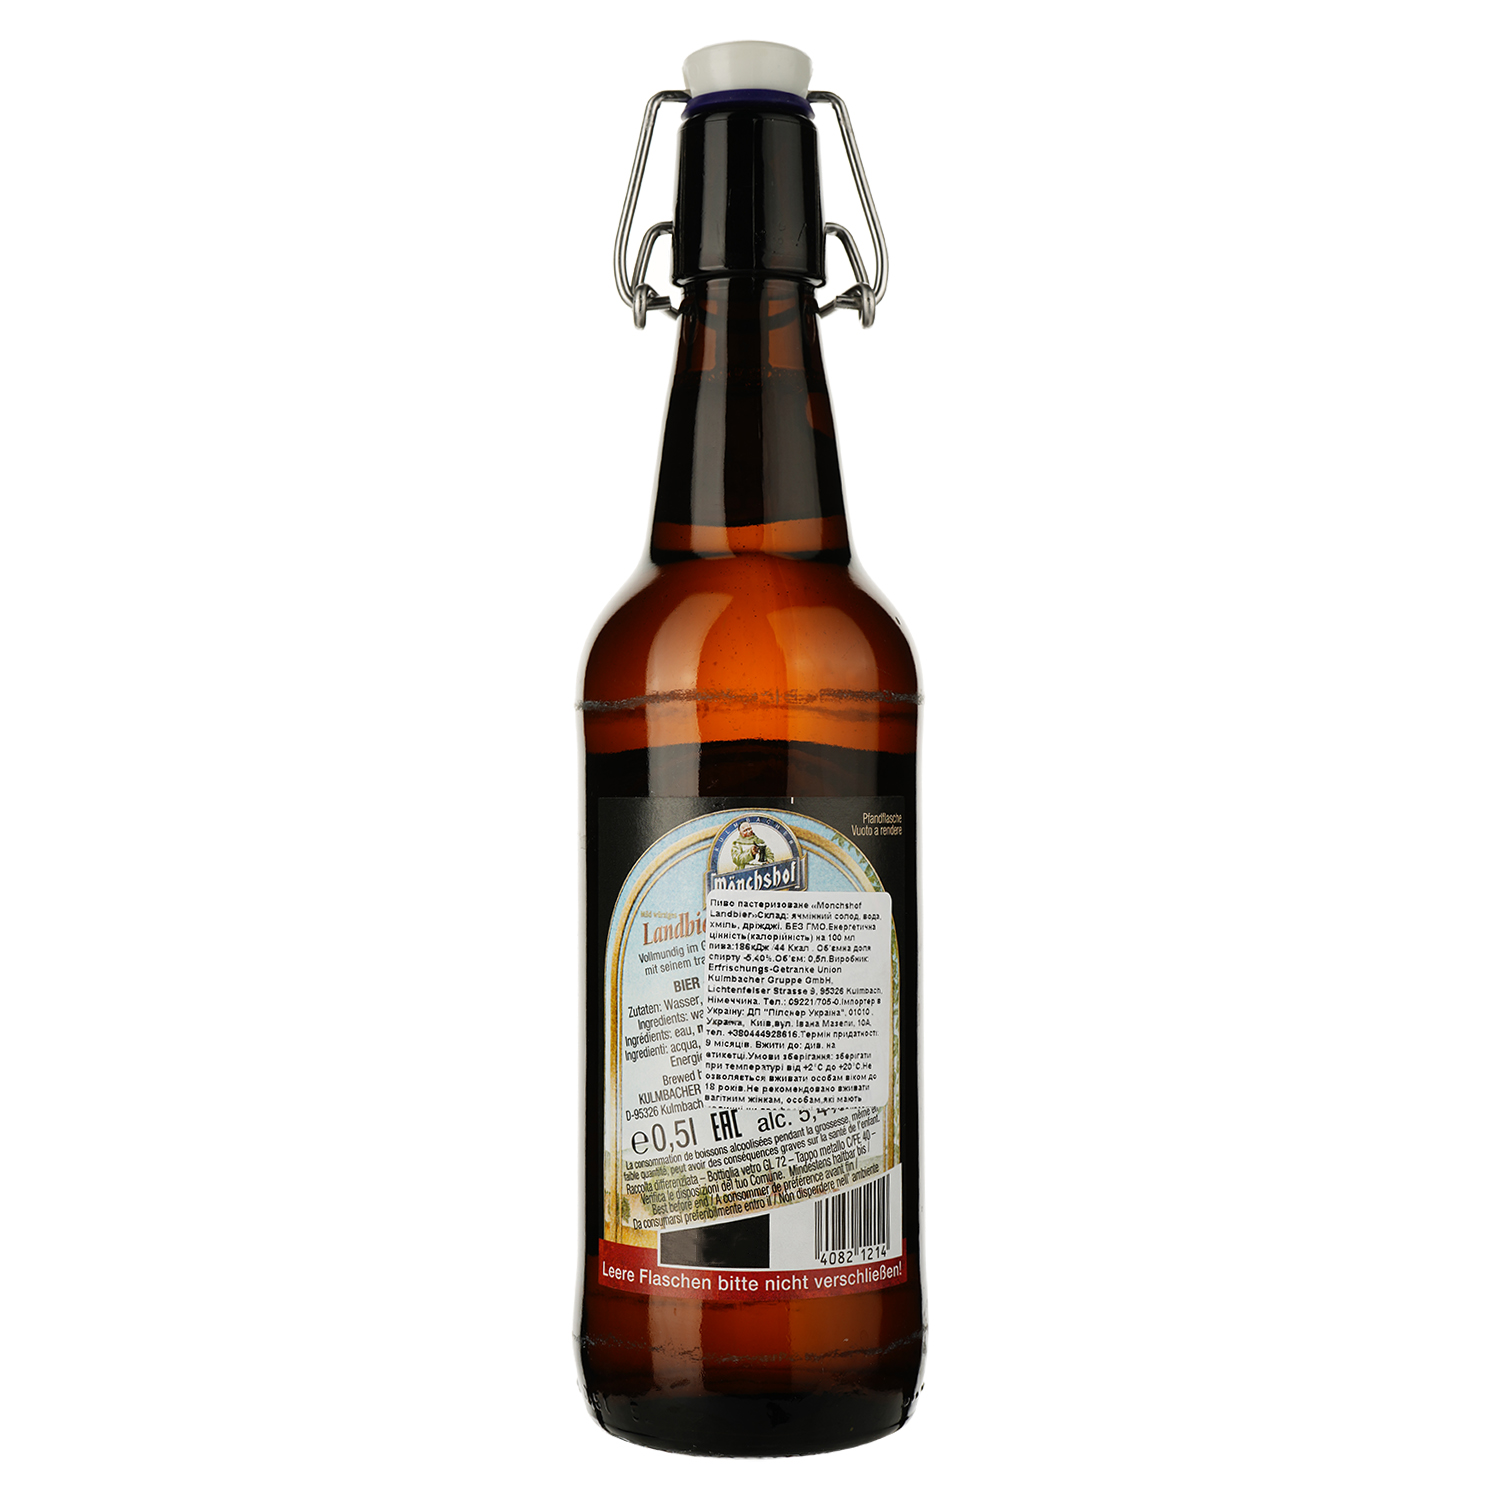 Пиво Monchshof Landbier світле, 5.4%, 0.5 л - фото 2